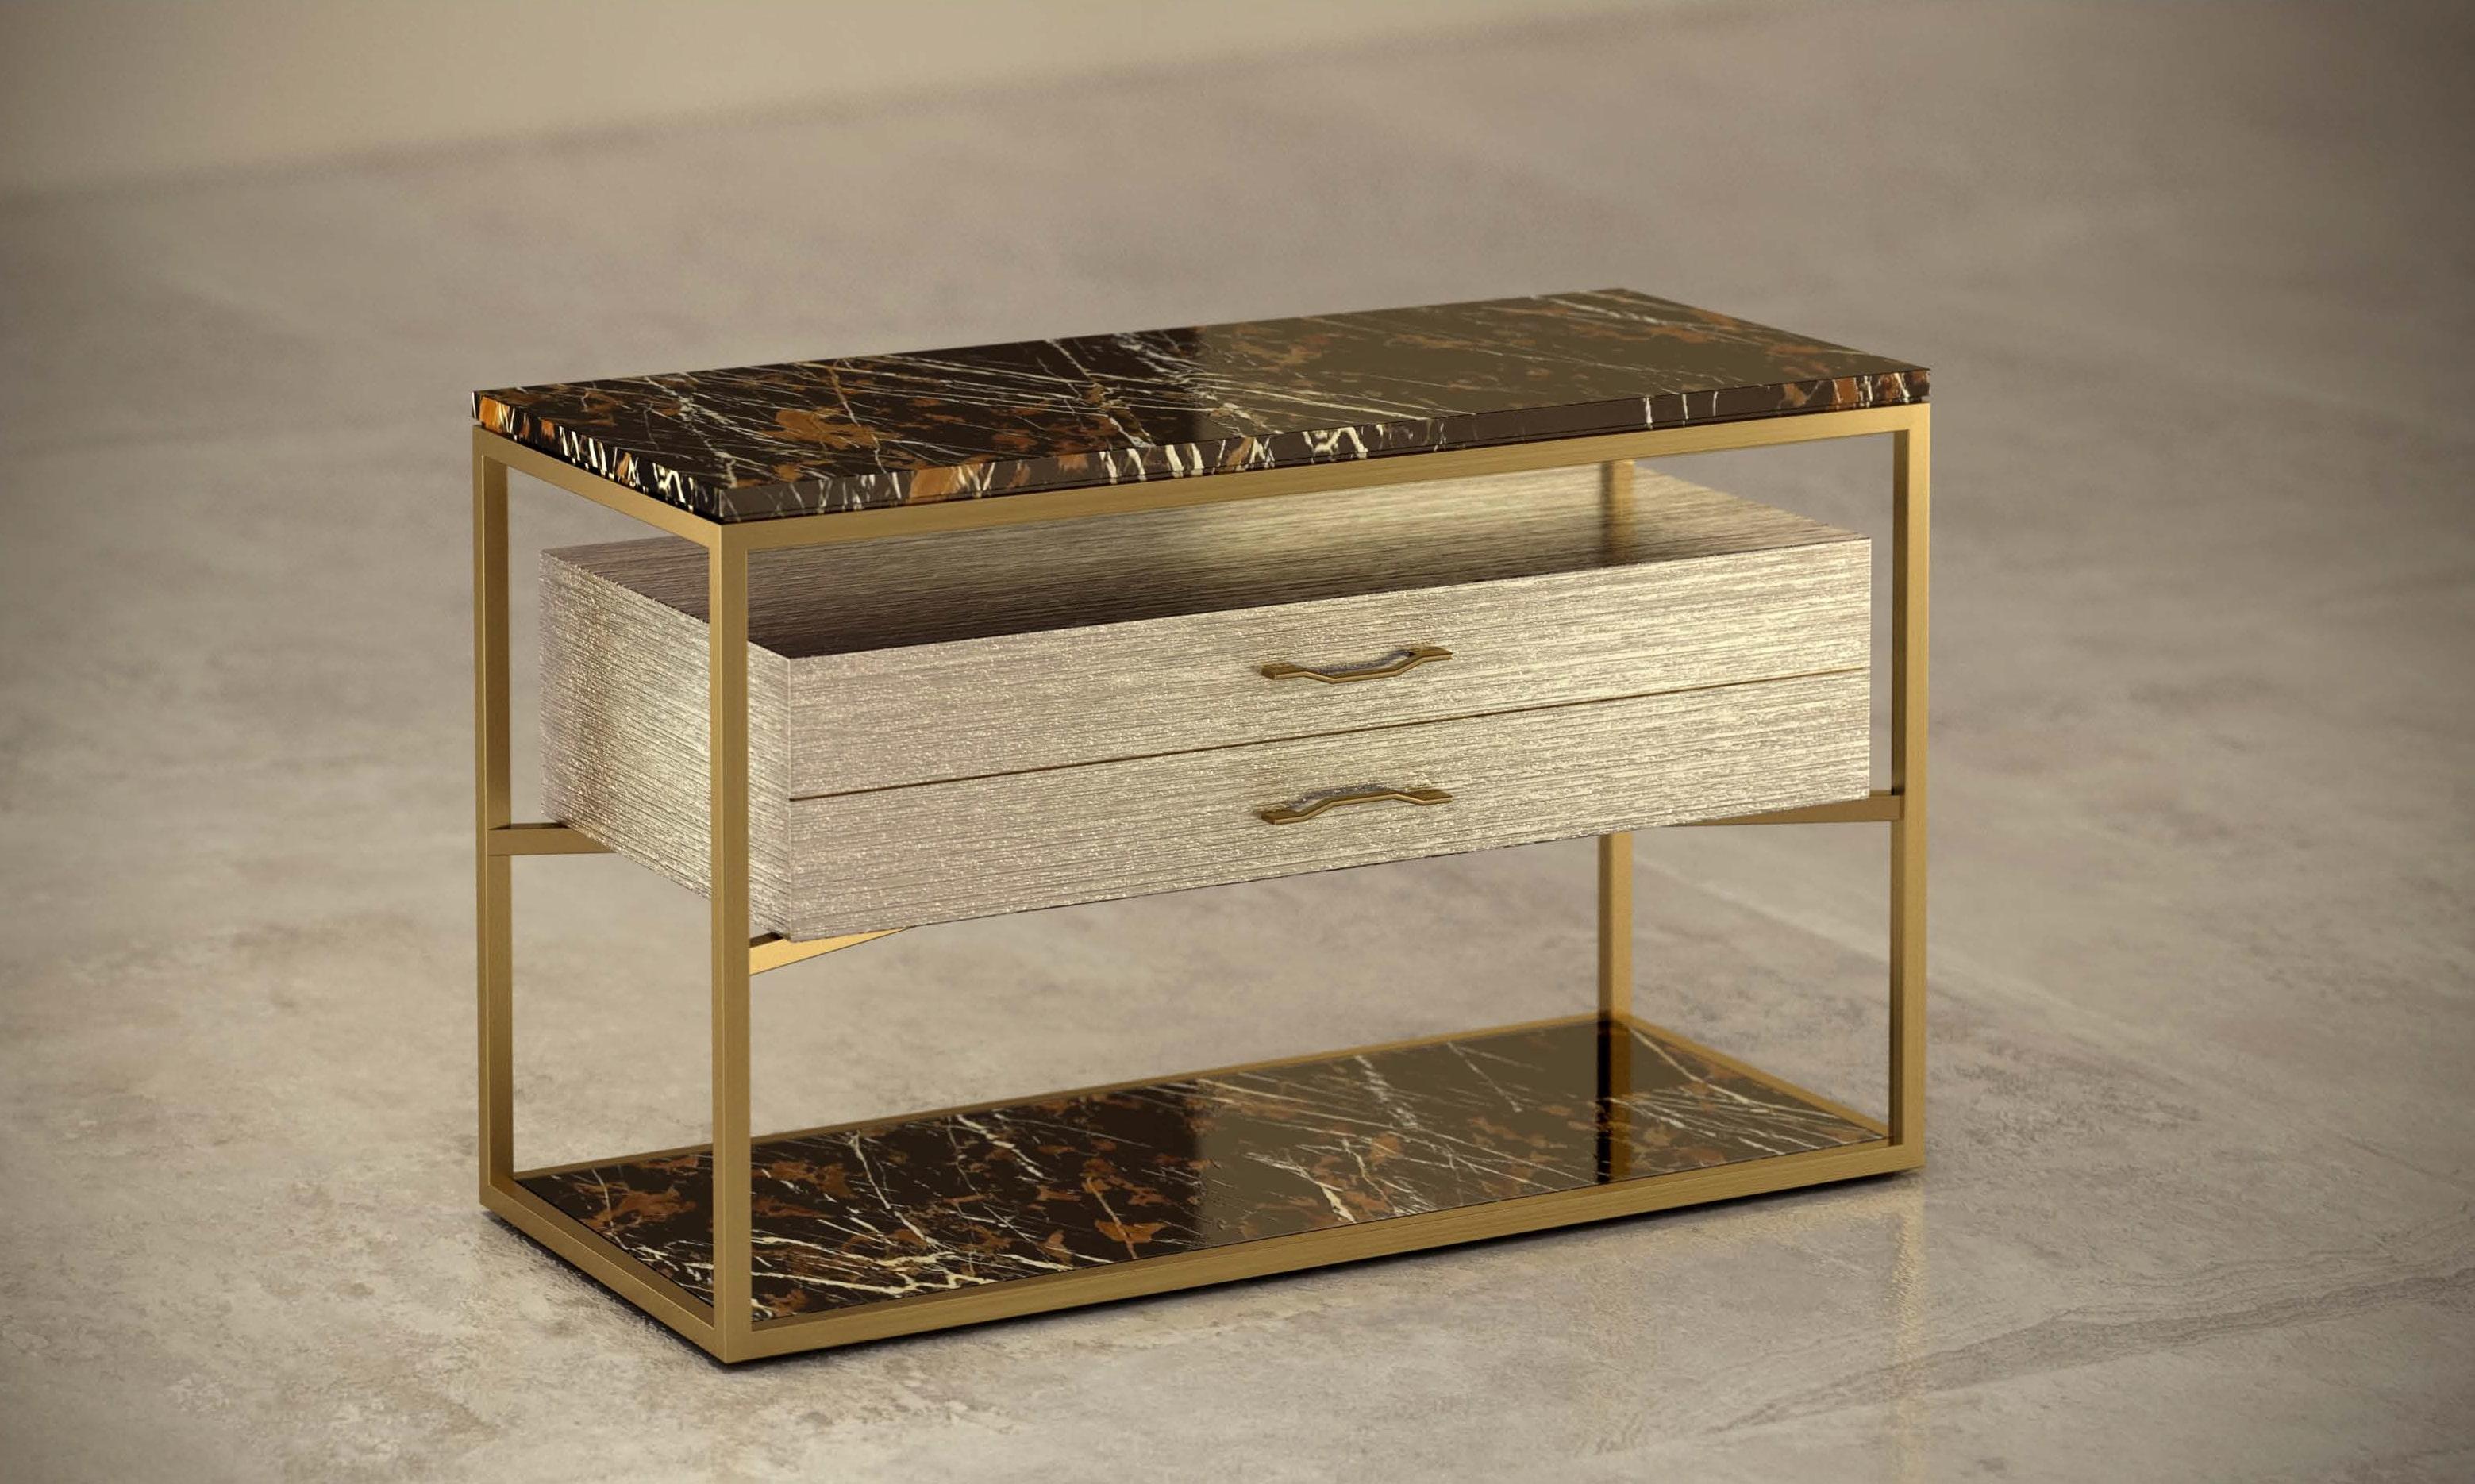 - Table de chevet composée de marbre, bois et métal, créée par l'architecte Michele Arcarese en collaboration avec Giovannozzi.
- Dessus avec rainure, en marbre type 